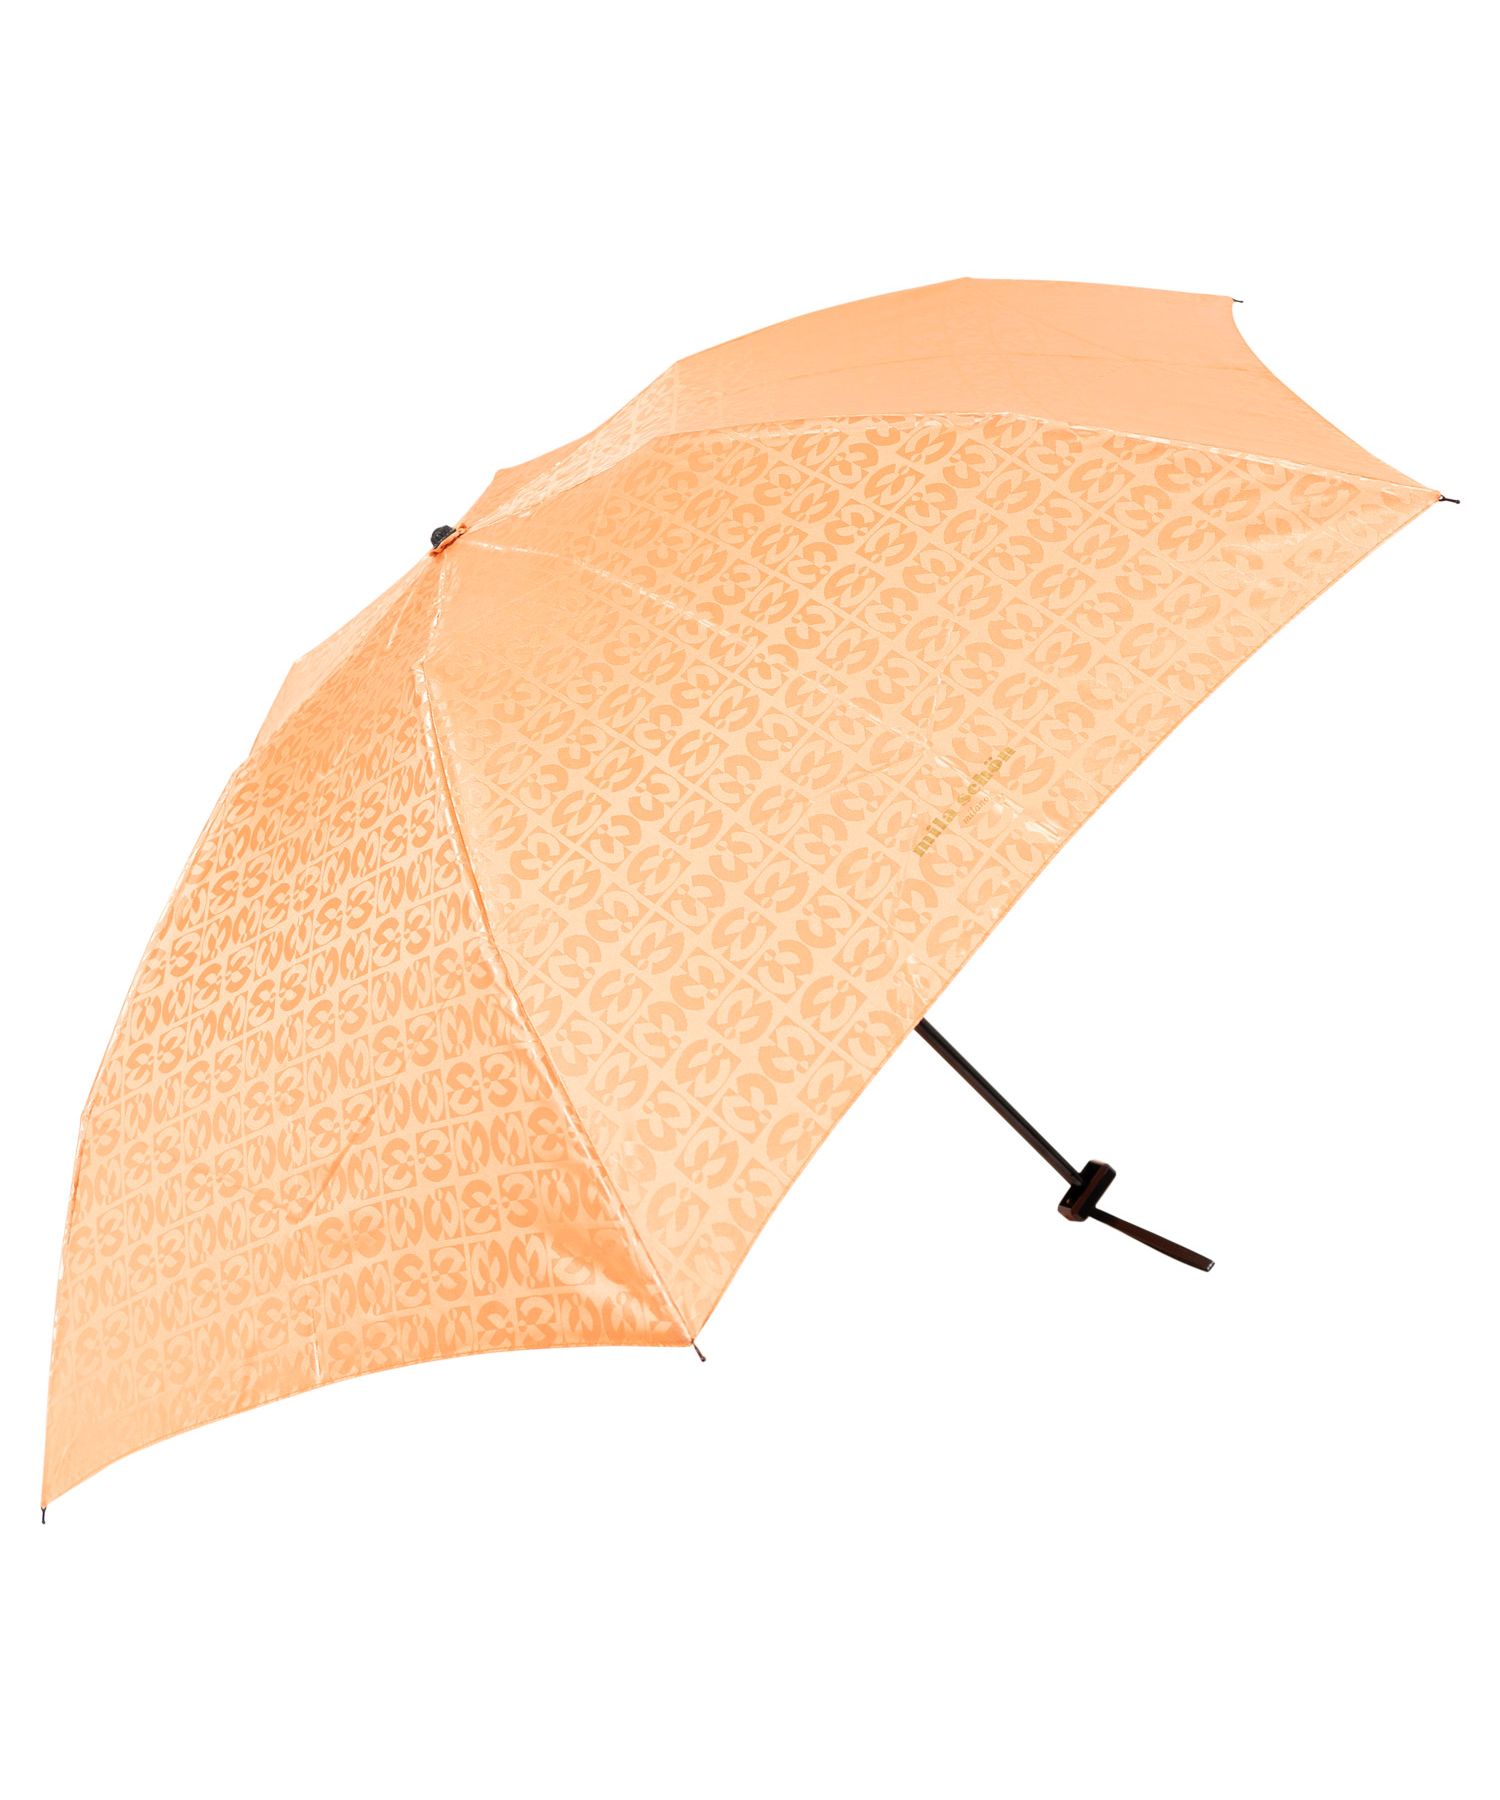 ミラショーン mila schon 傘 折り畳み 雨傘 レディース 55cm 軽量